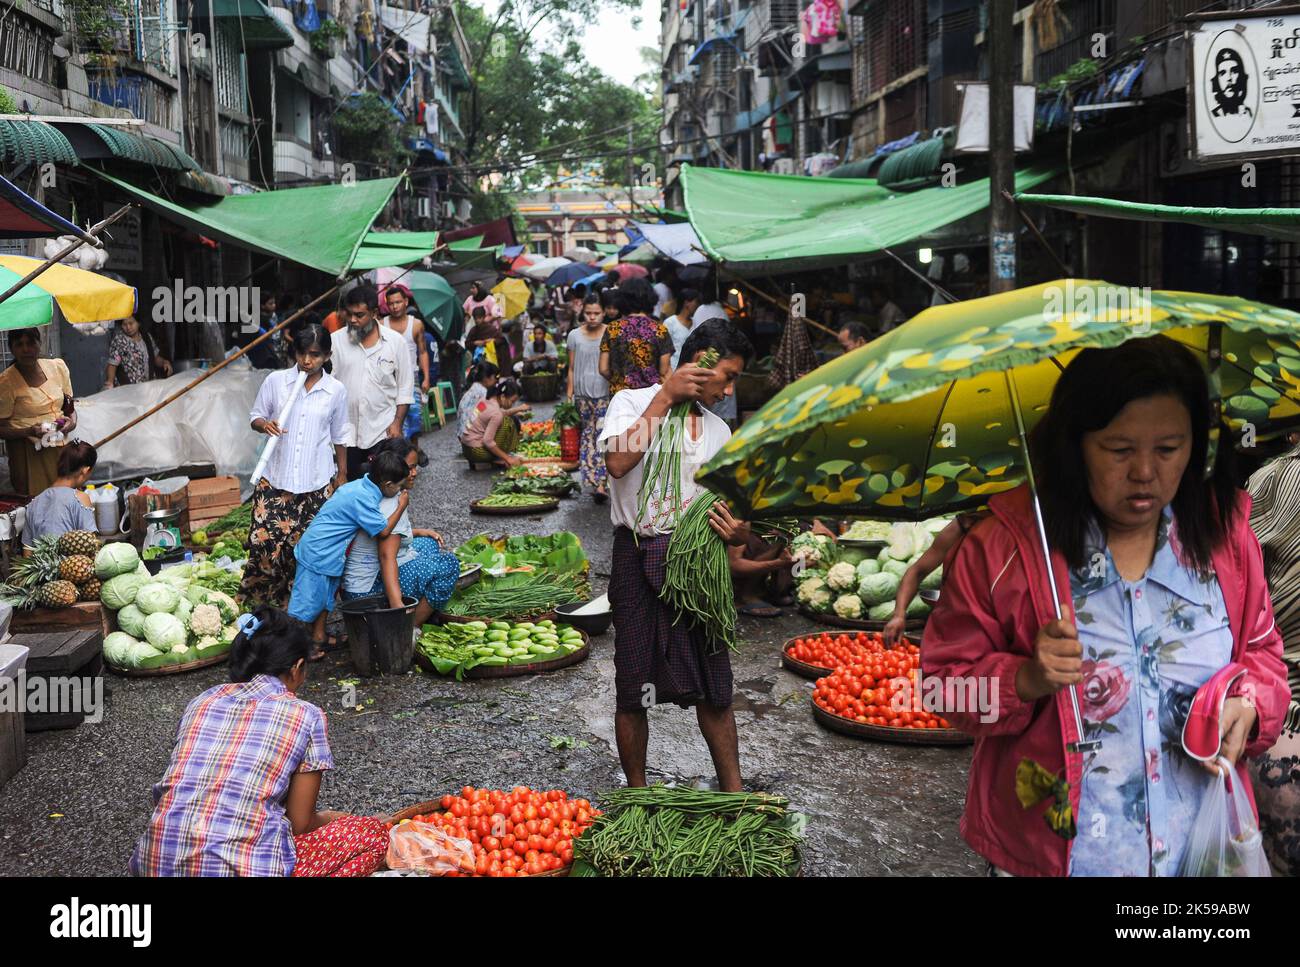 28.07.2013, Myanmar, Yangon - die Marktszene zeigt Menschen, die während der Regenzeit auf einem Straßenmarkt im Stadtzentrum frisches Gemüse und Lebensmittel kaufen Stockfoto